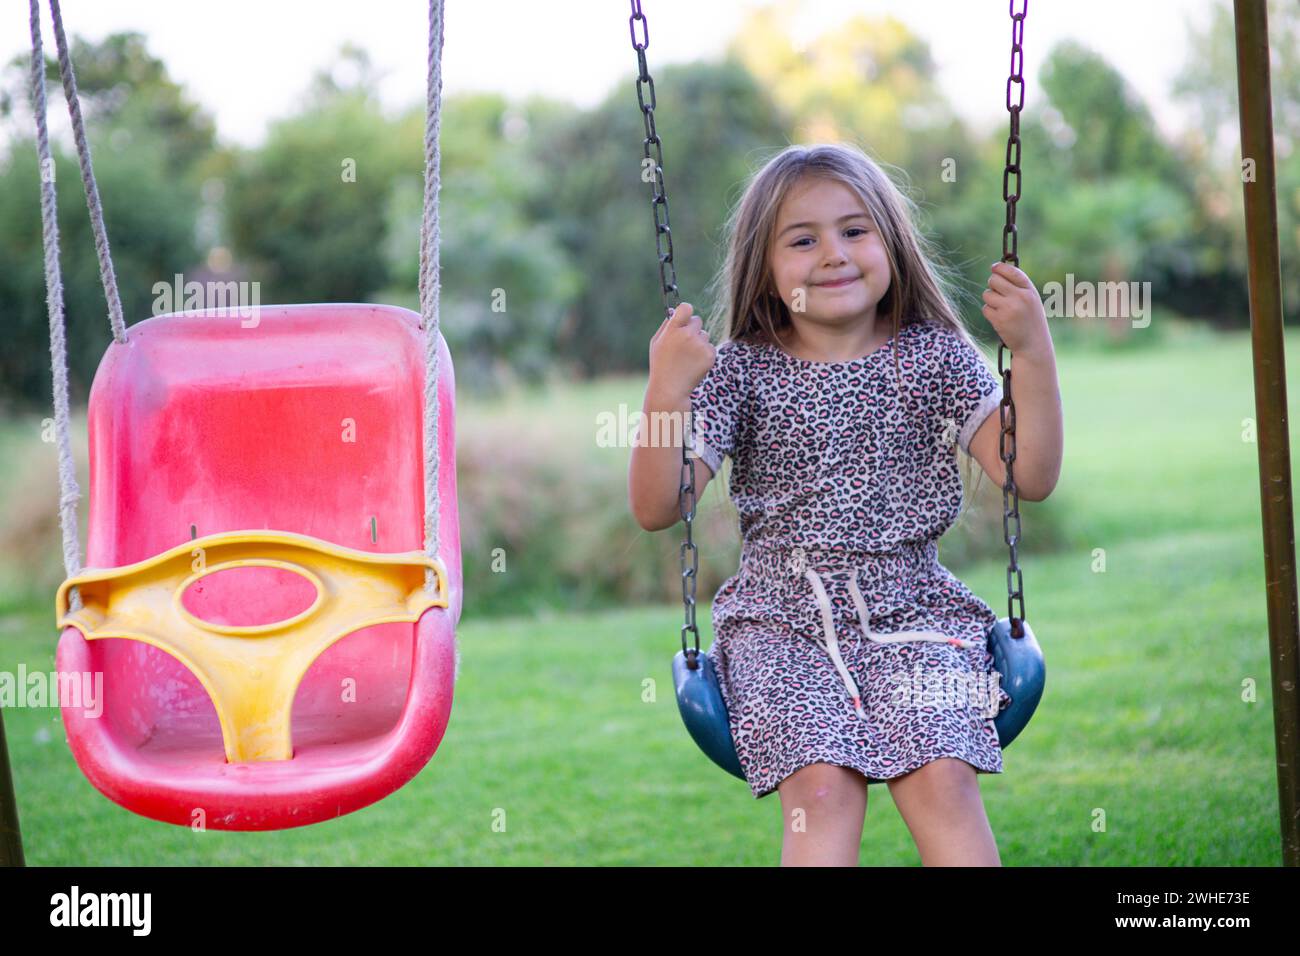 hermosa niña rubia de 8 años disfruta de la naturaleza en un escenario al aire libre lleno de verdor y luz mientras se columpia con gracia Stock Photo